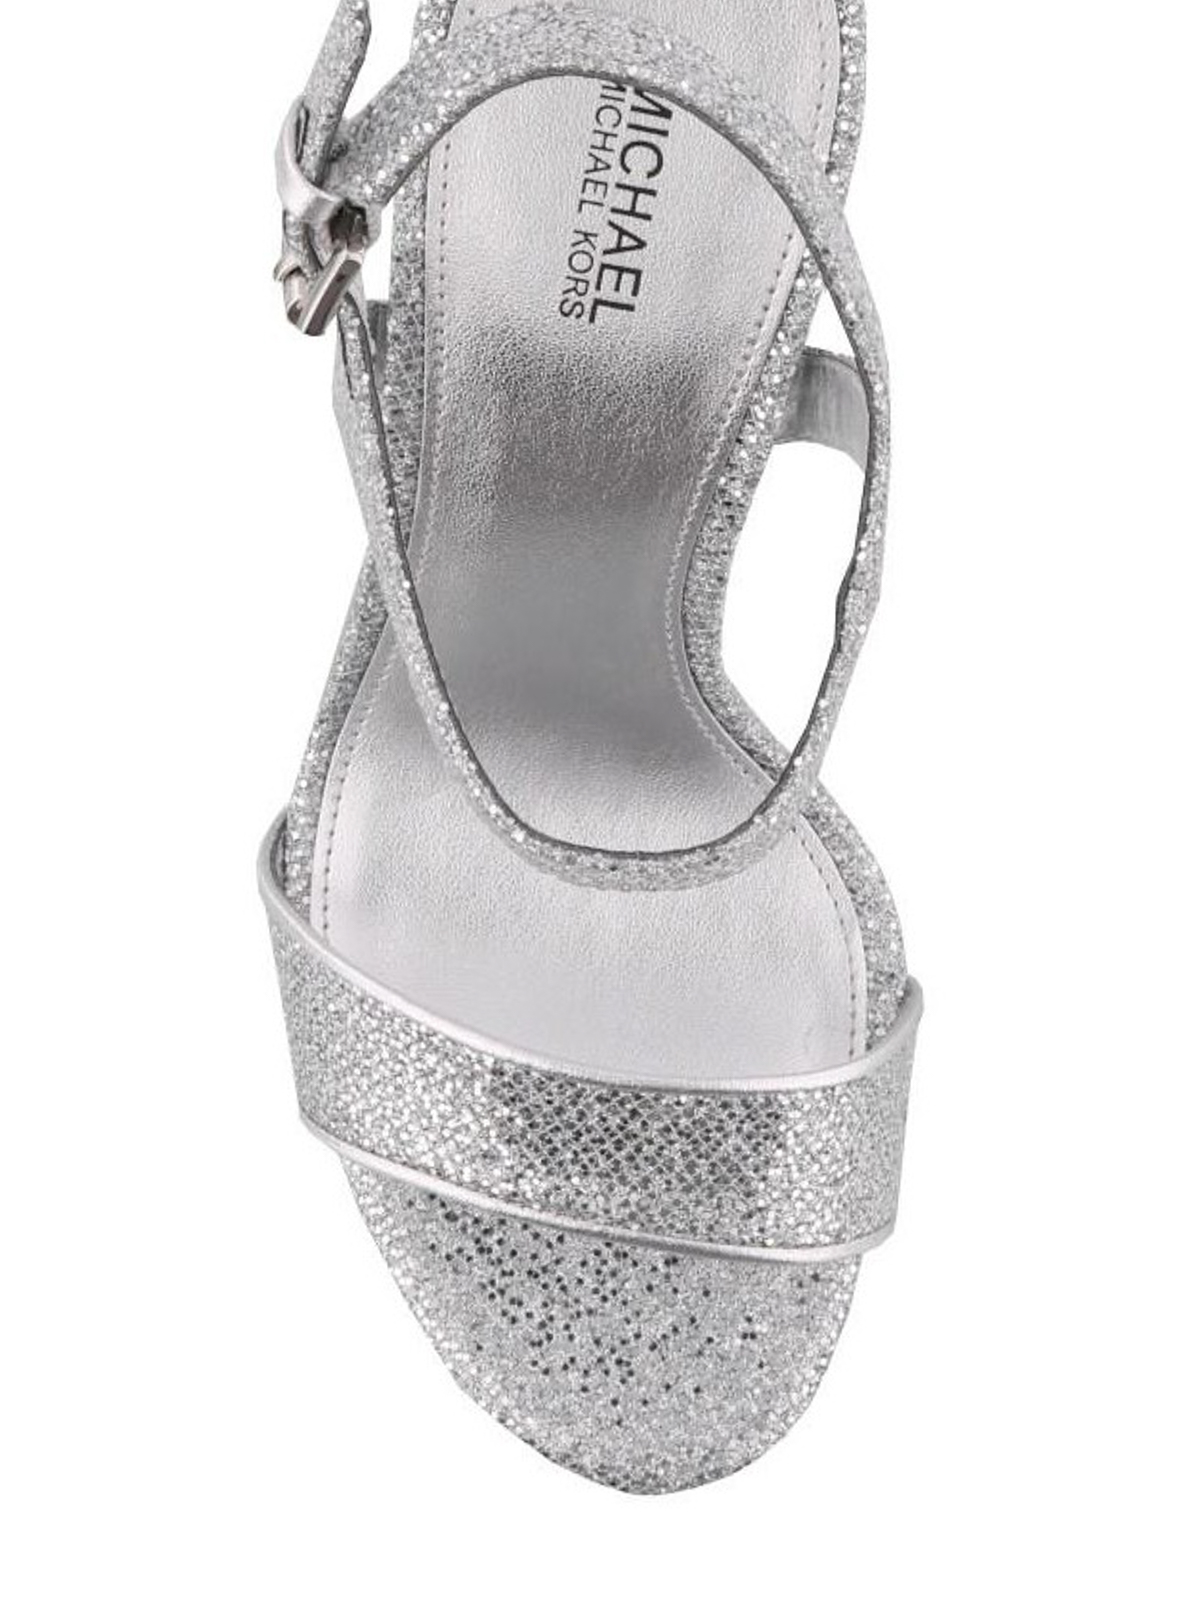 Sandals Michael Kors  Bella Flex Mid silver sandals  40S8BLMA1L040